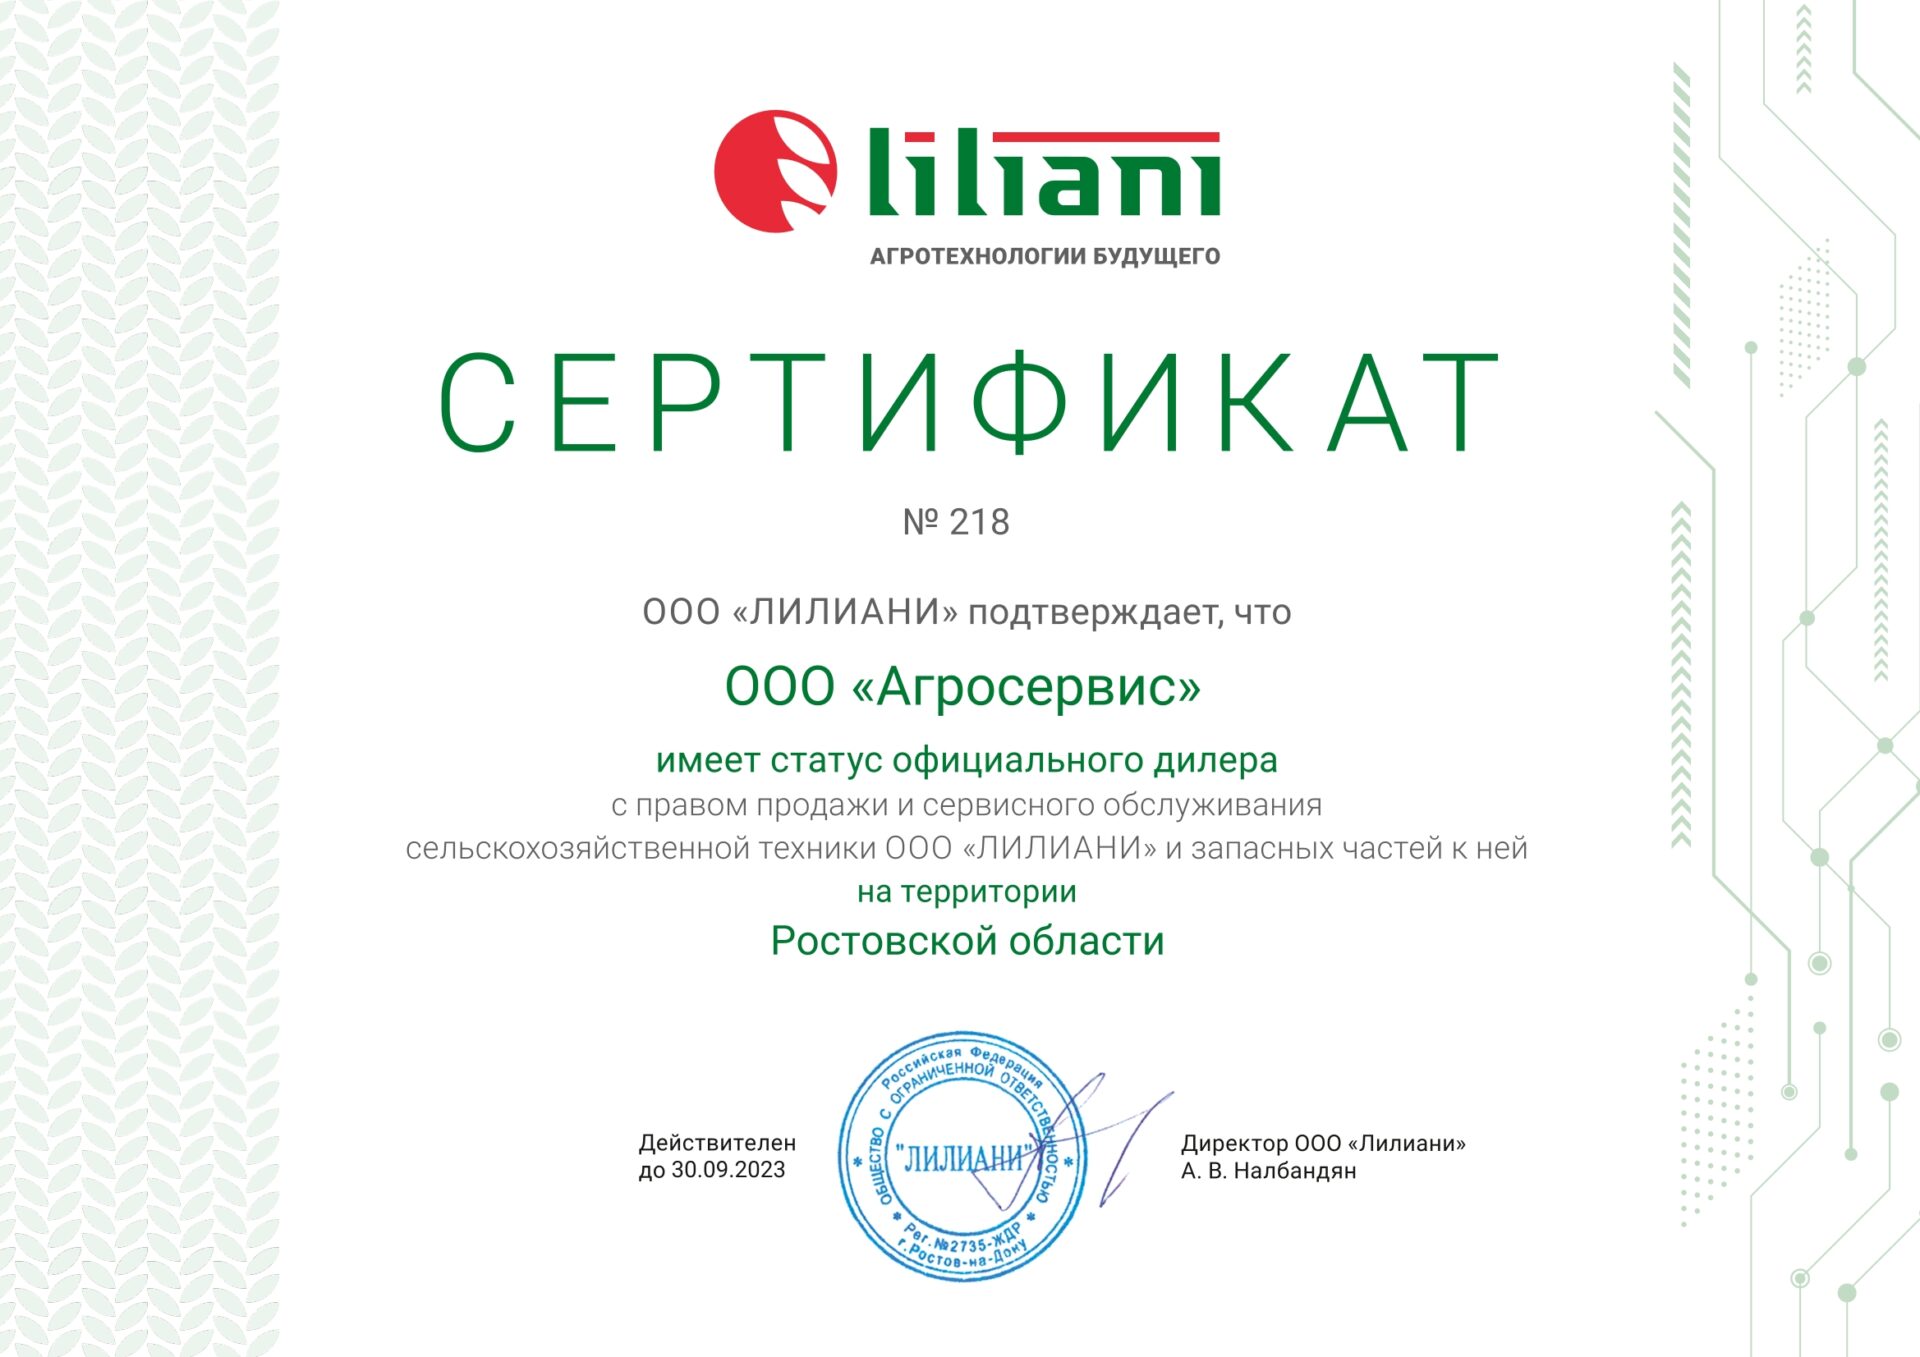 Агросервис - официальный дилер компании Лилиани в Ростовской области